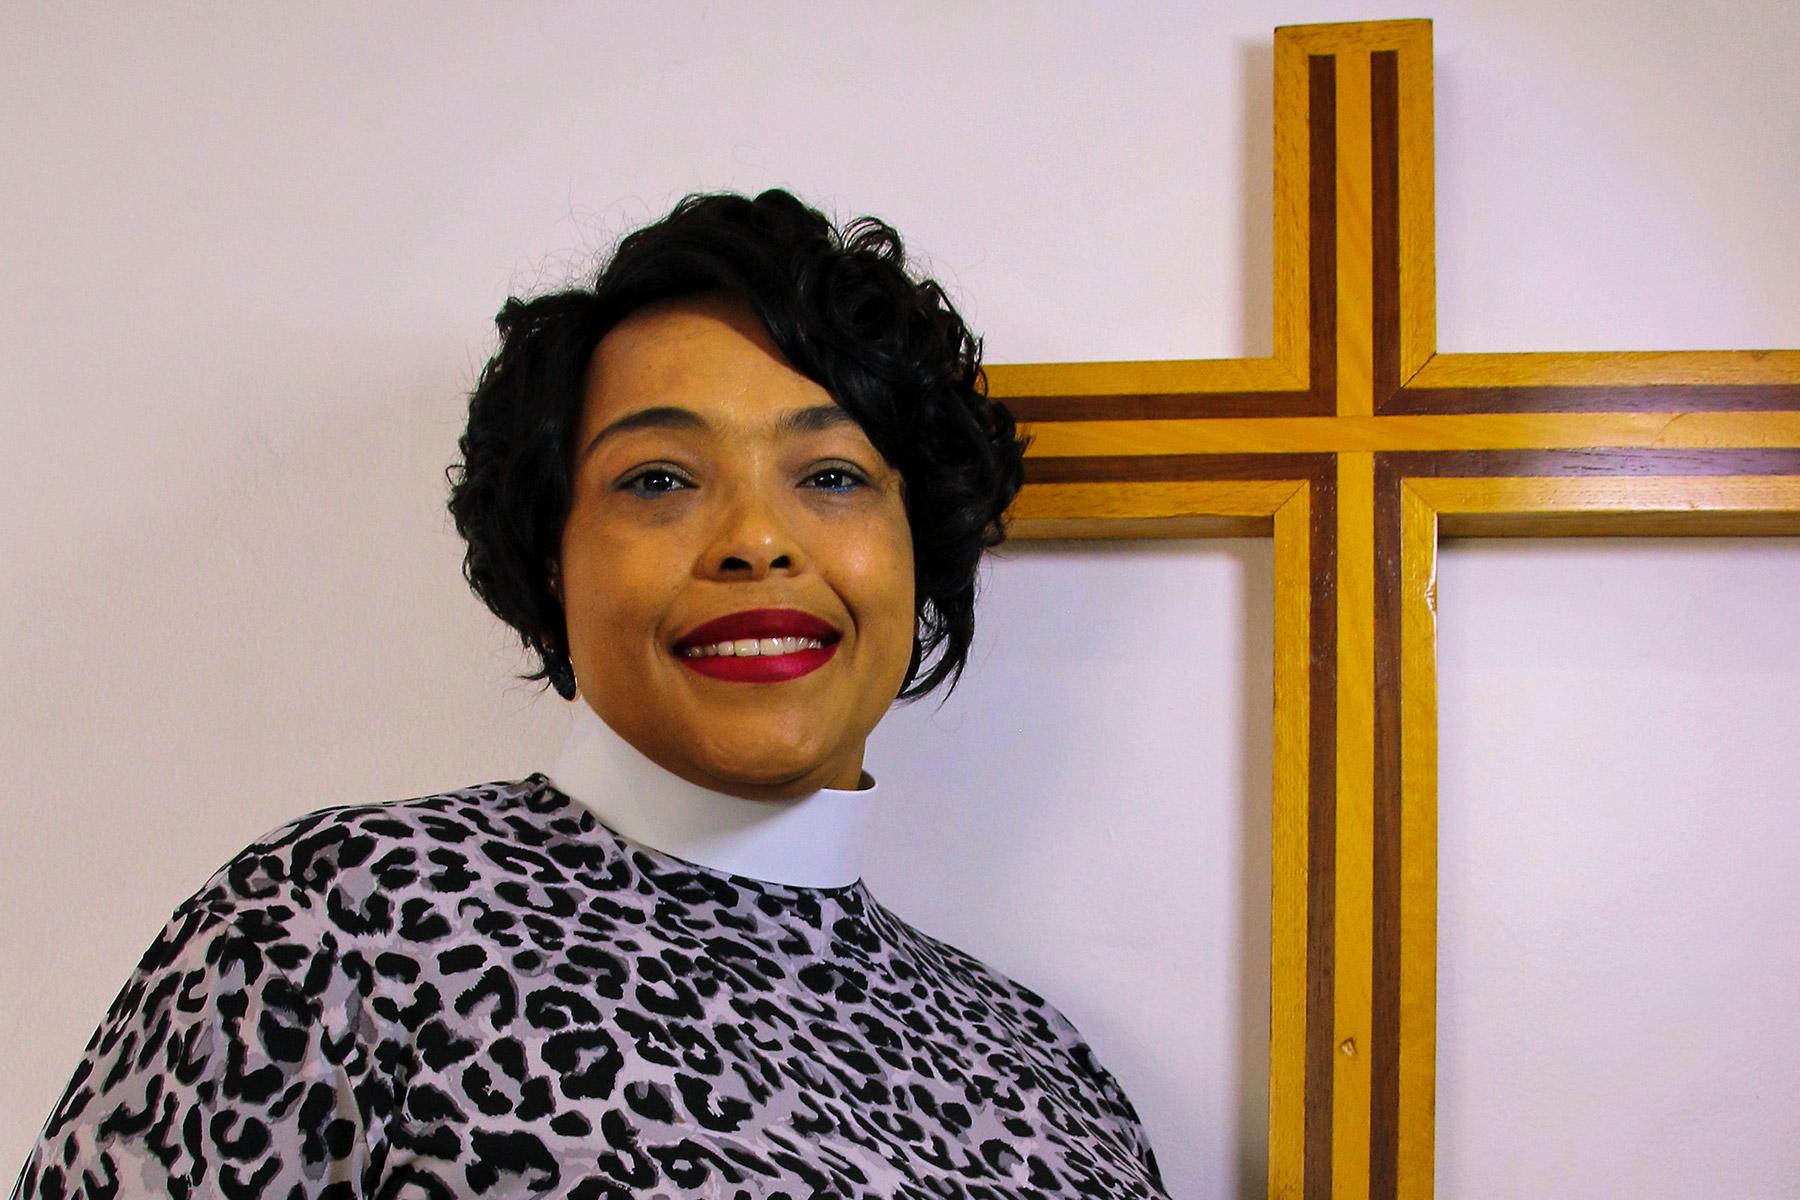 Pfarrerin Lilana Kasper, Geschäftsführerin der Lutherischen Gemeinschaft im Südlichen Afrika, ist die erste Frau in dieser Position. Foto: R. Mofulatsi/LUCSA